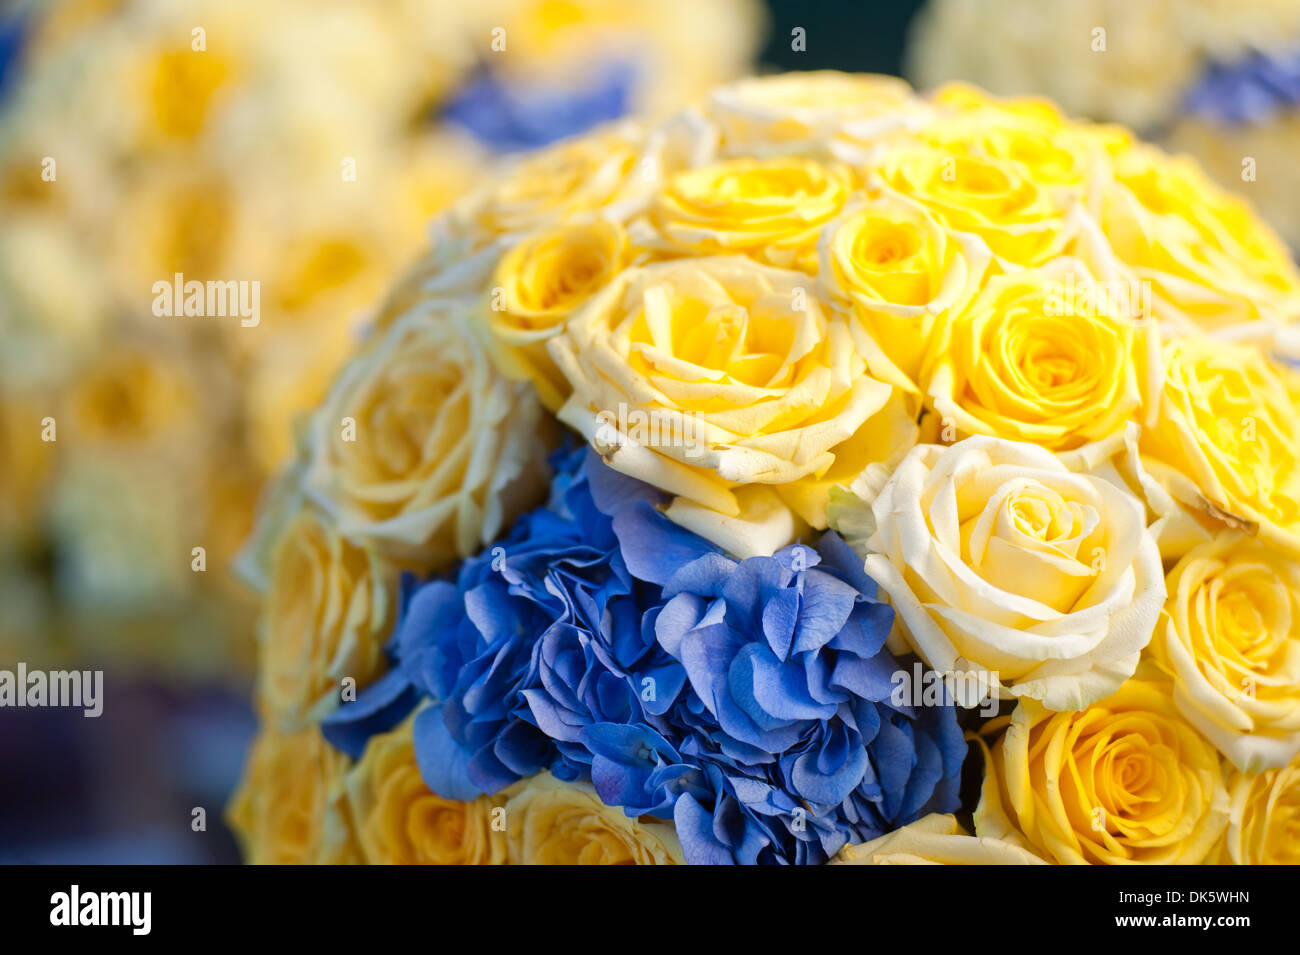 Fiori di Rose bouquet di fiori gialli romanticismo di stile e arredamento elegante Foto Stock